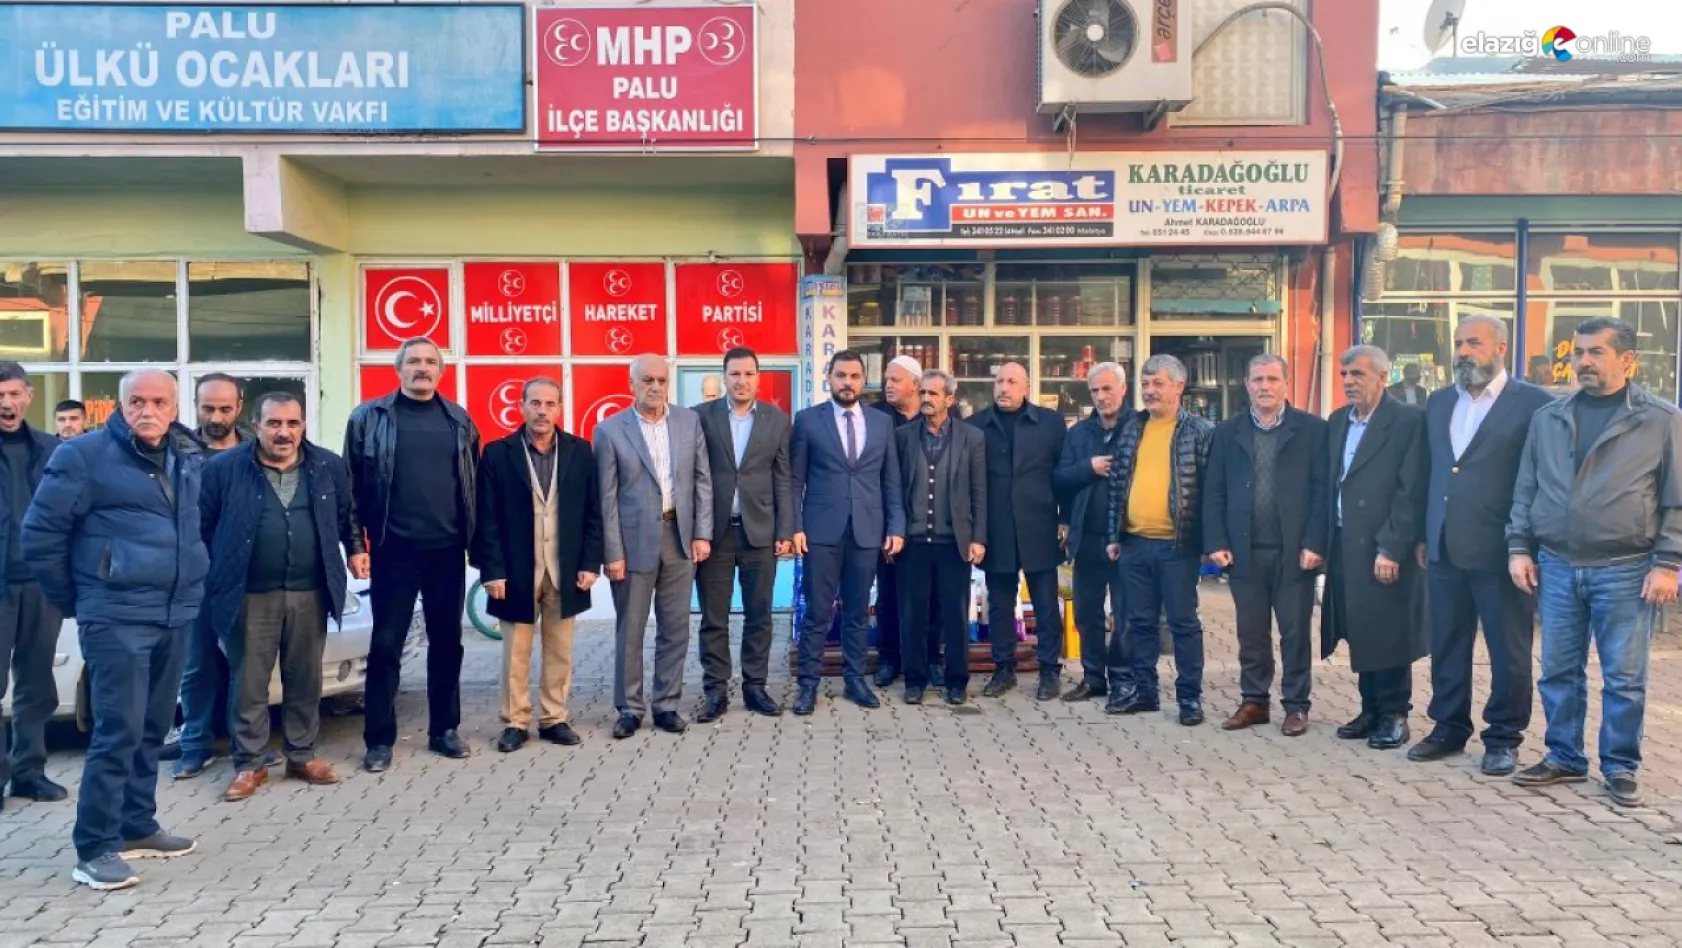 MHP İl Başkanı Yunus Bal'dan ilçe teşkilatlarına ziyaret!